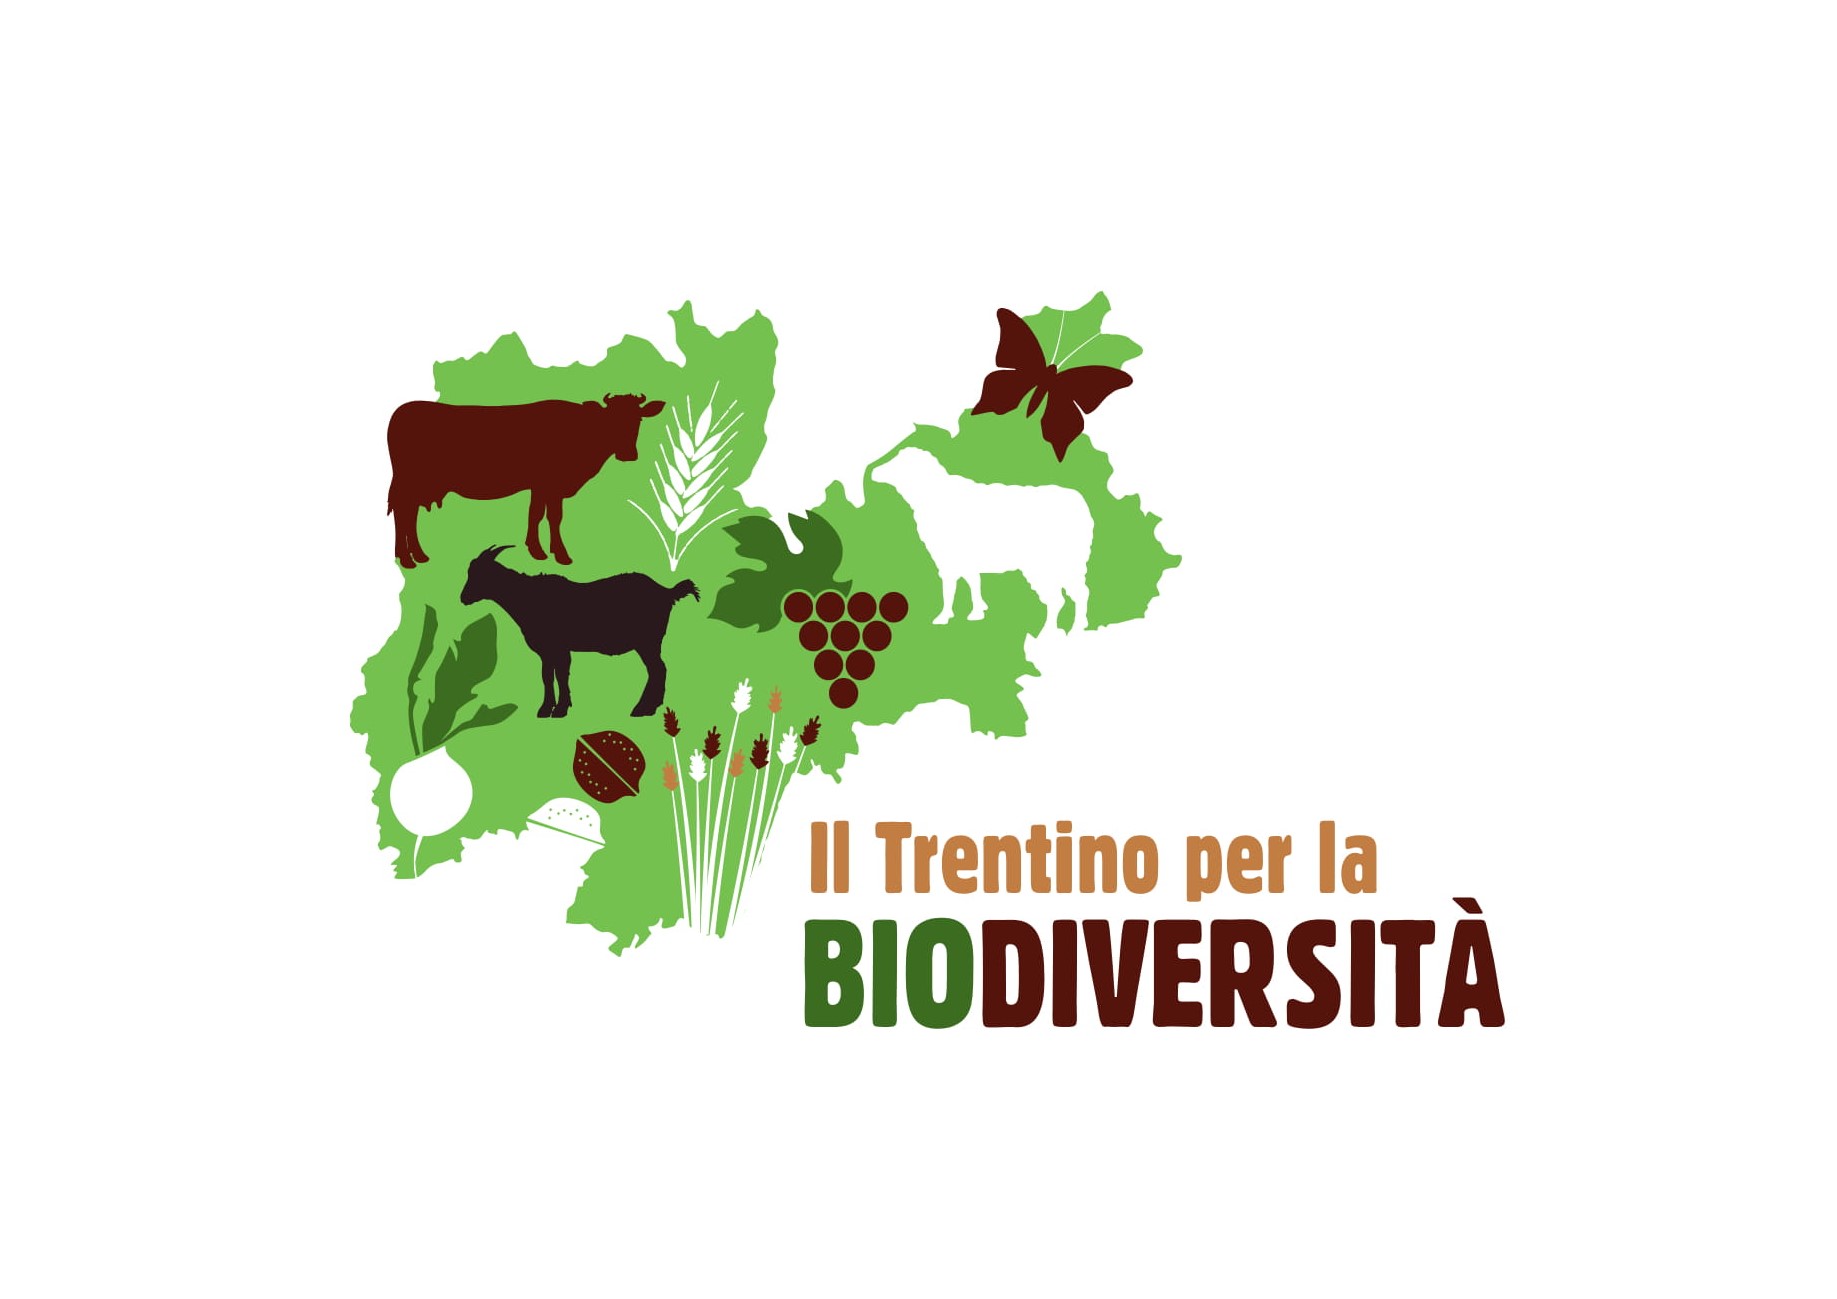 La Rete di Riserve al Festival della Biodiversità Trentino